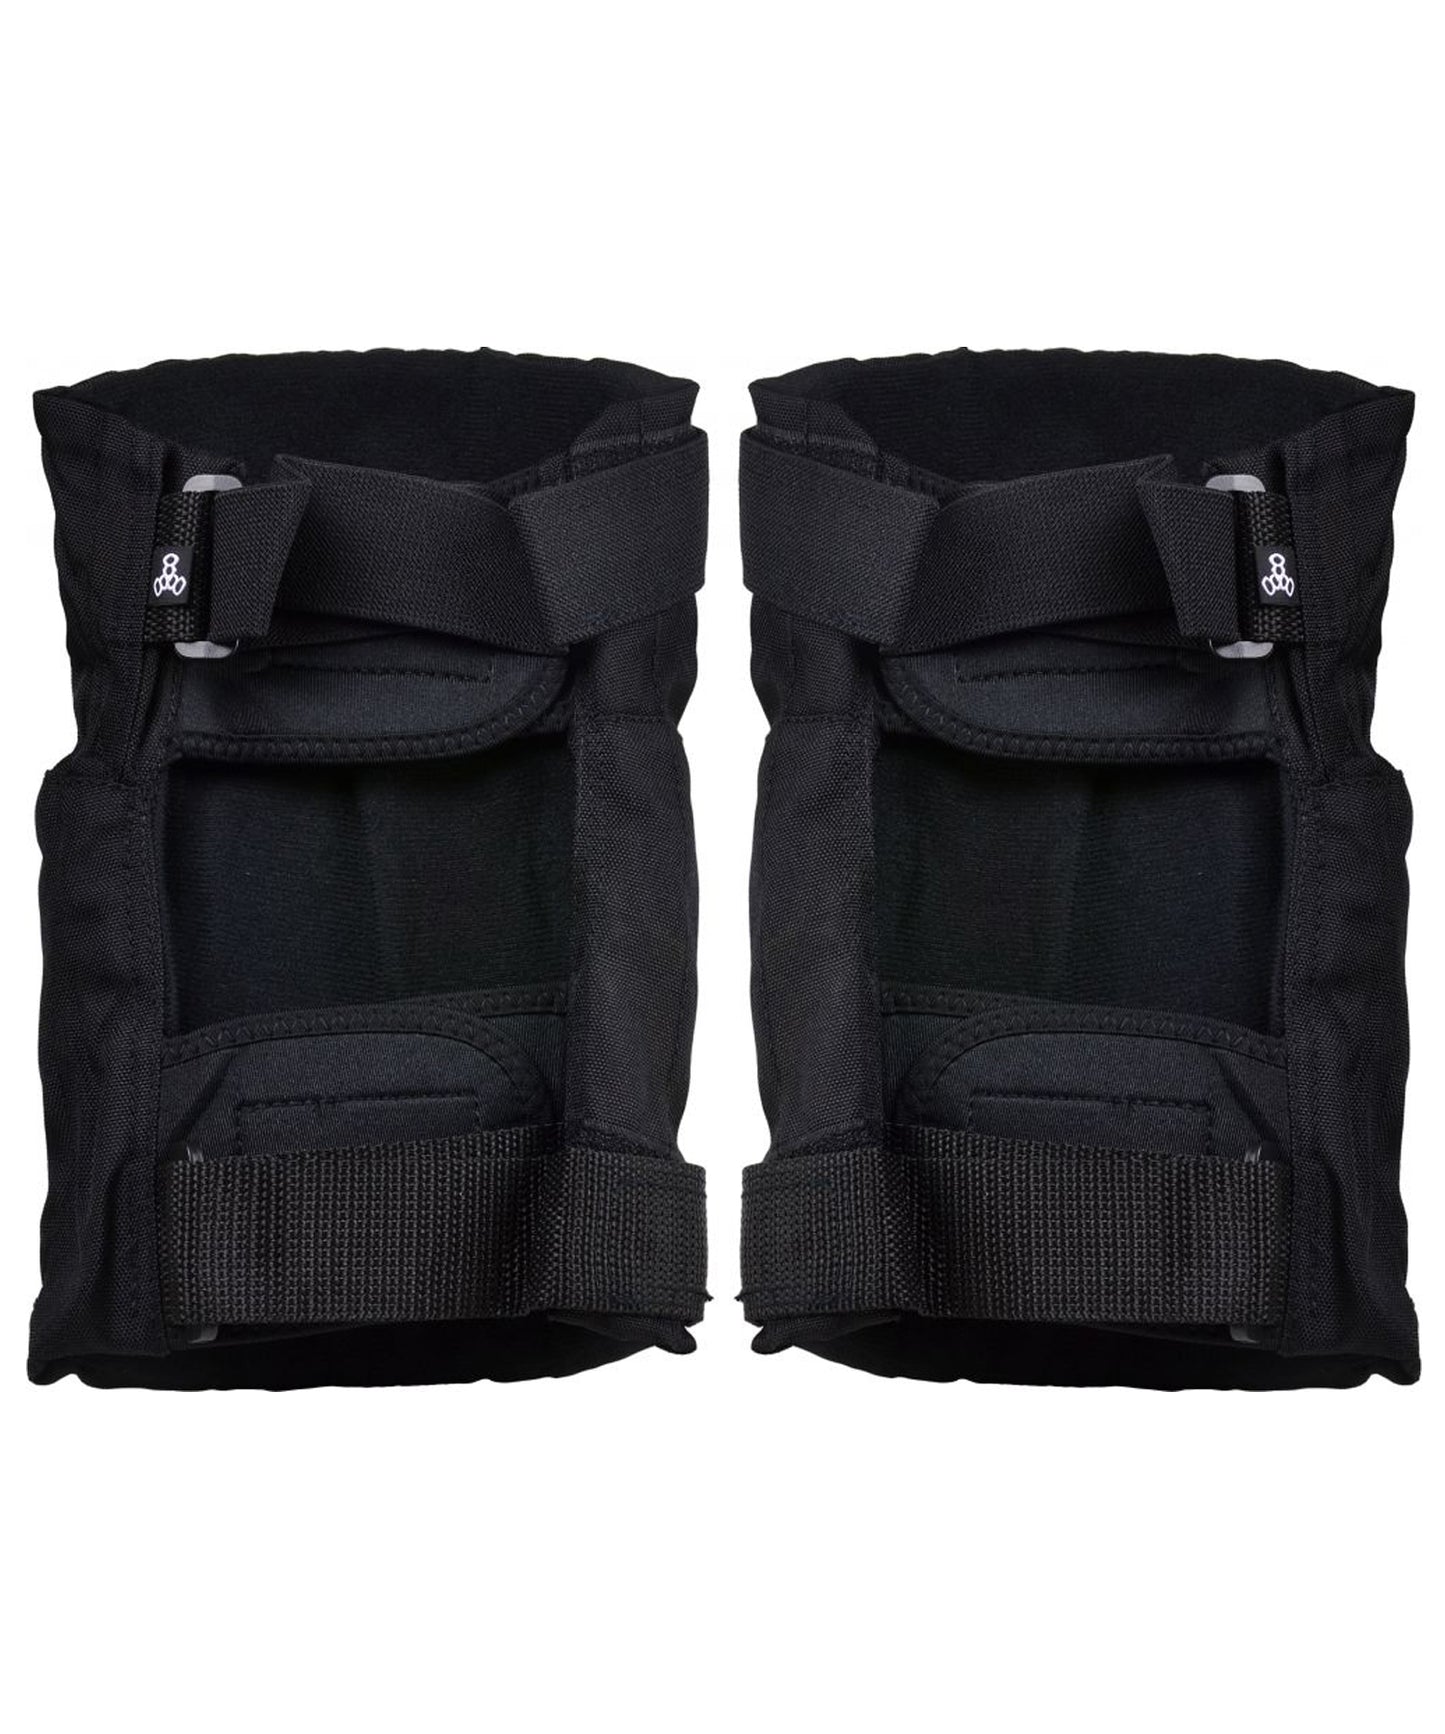 triple-eight-park-2-pack-knee-ellbow-protection-rodilleras KP 22 con una mochila de malla liviana para un almacenamiento conveniente.